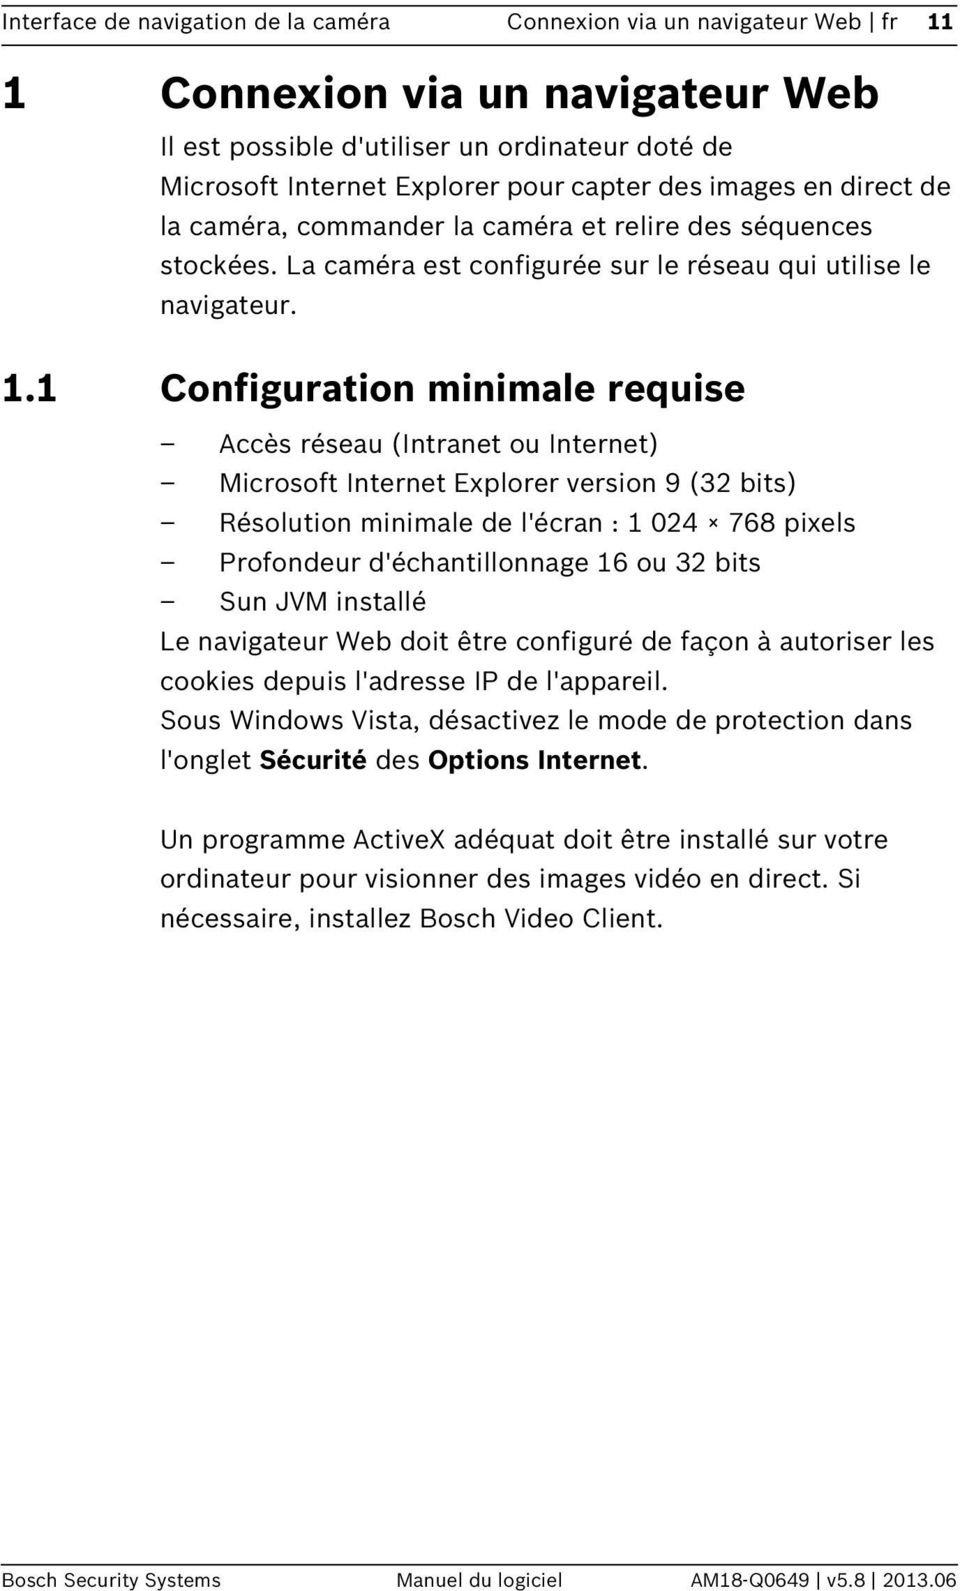 1 Configuration minimale requise Accès réseau (Intranet ou Internet) Microsoft Internet Explorer version 9 (32 bits) Résolution minimale de l'écran : 1 024 768 pixels Profondeur d'échantillonnage 16